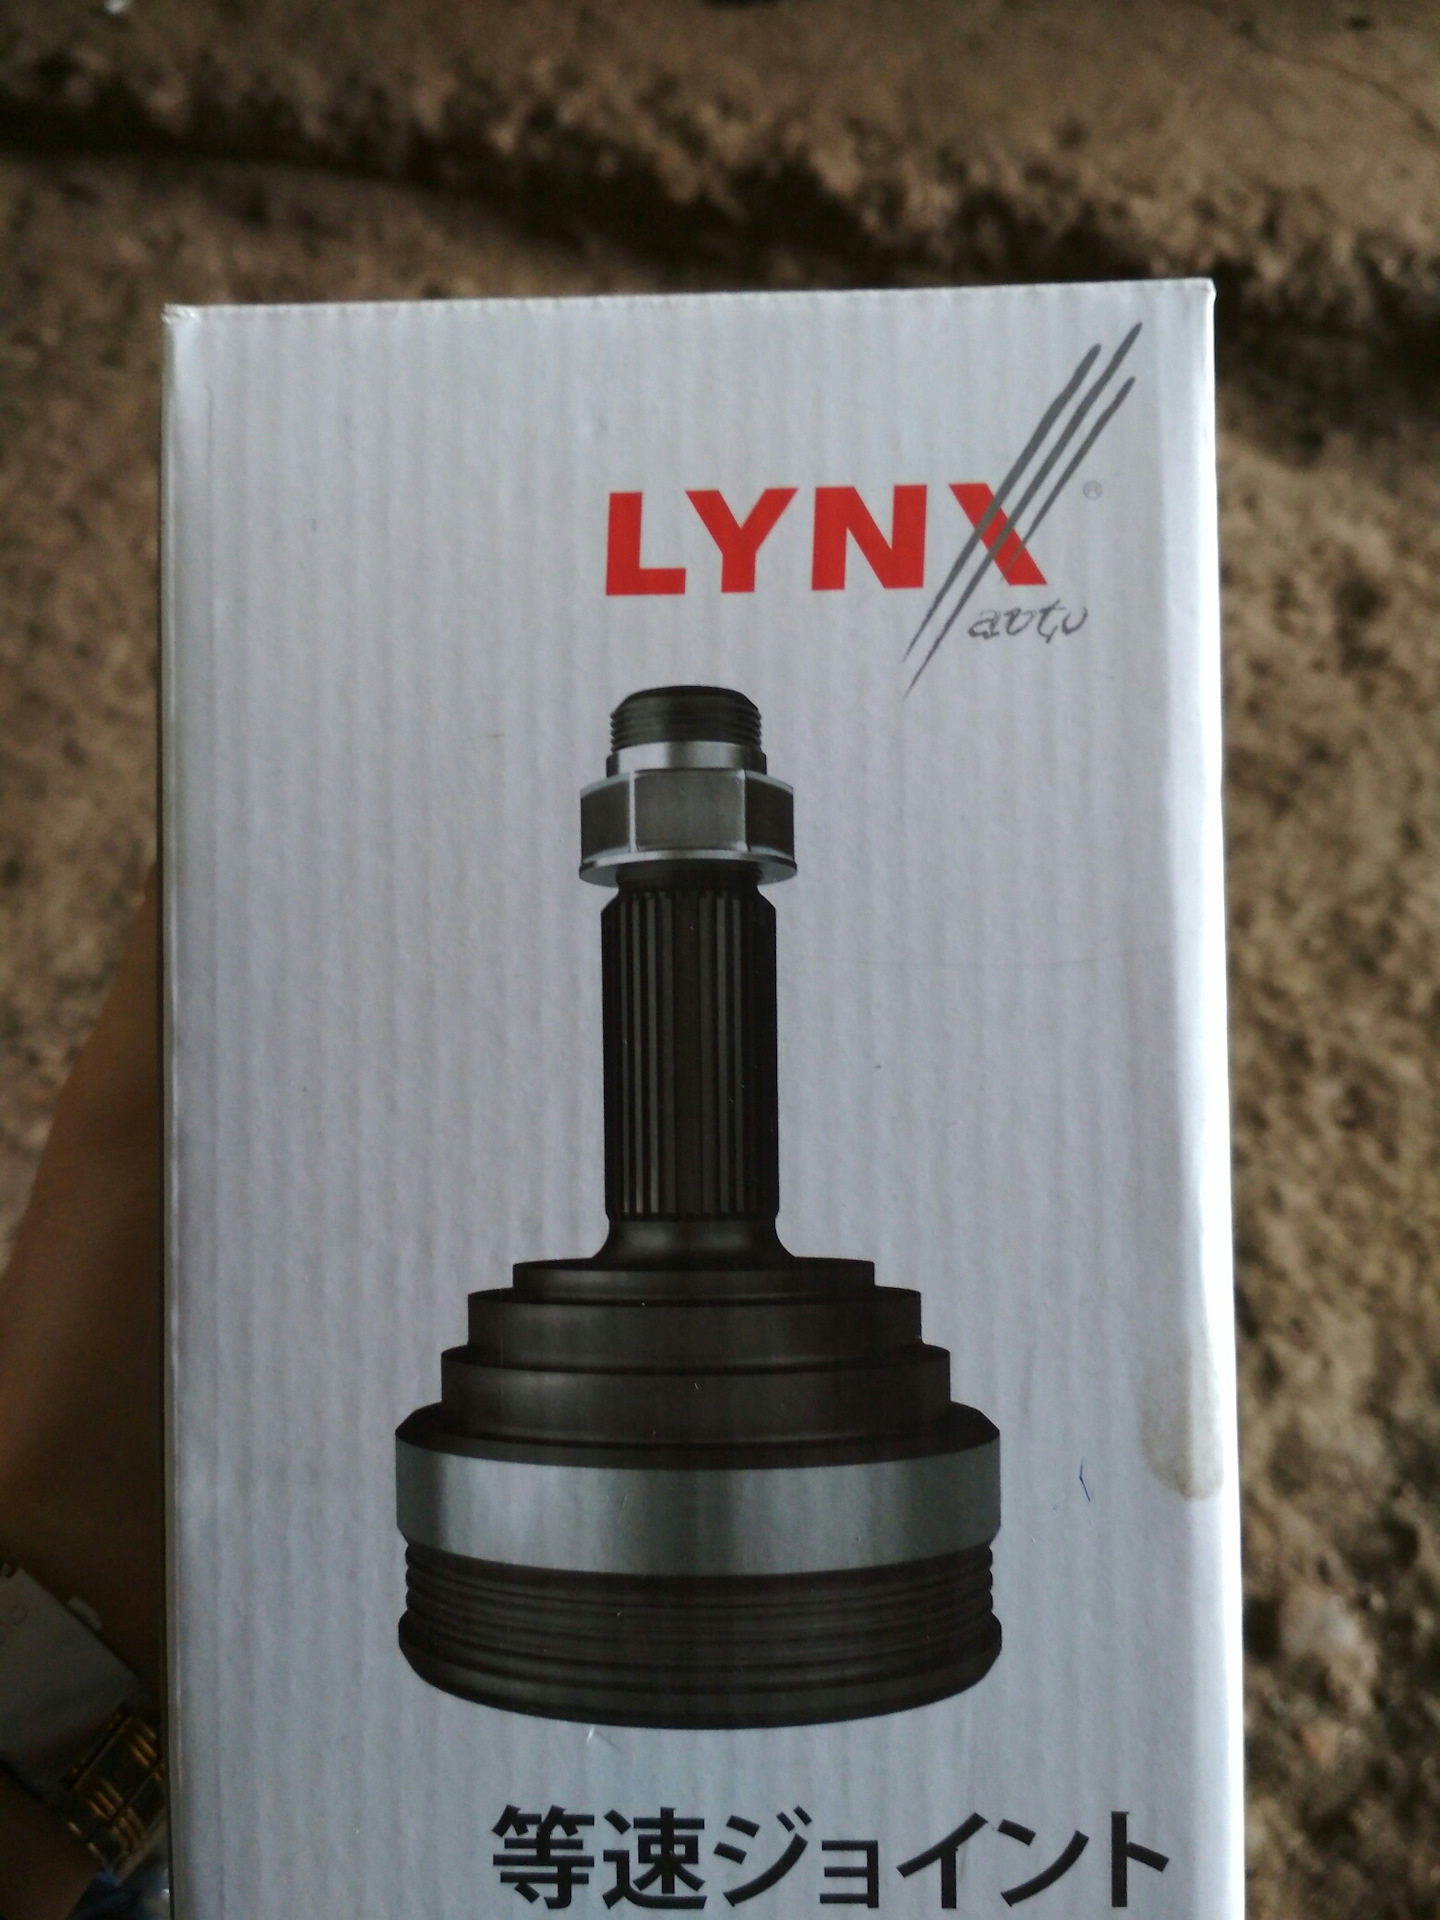 Производитель lynx отзывы. Rh0322 Lynx отзывы. Шаровые Lynx отзывы. Vs1249 Lynx отзывы.